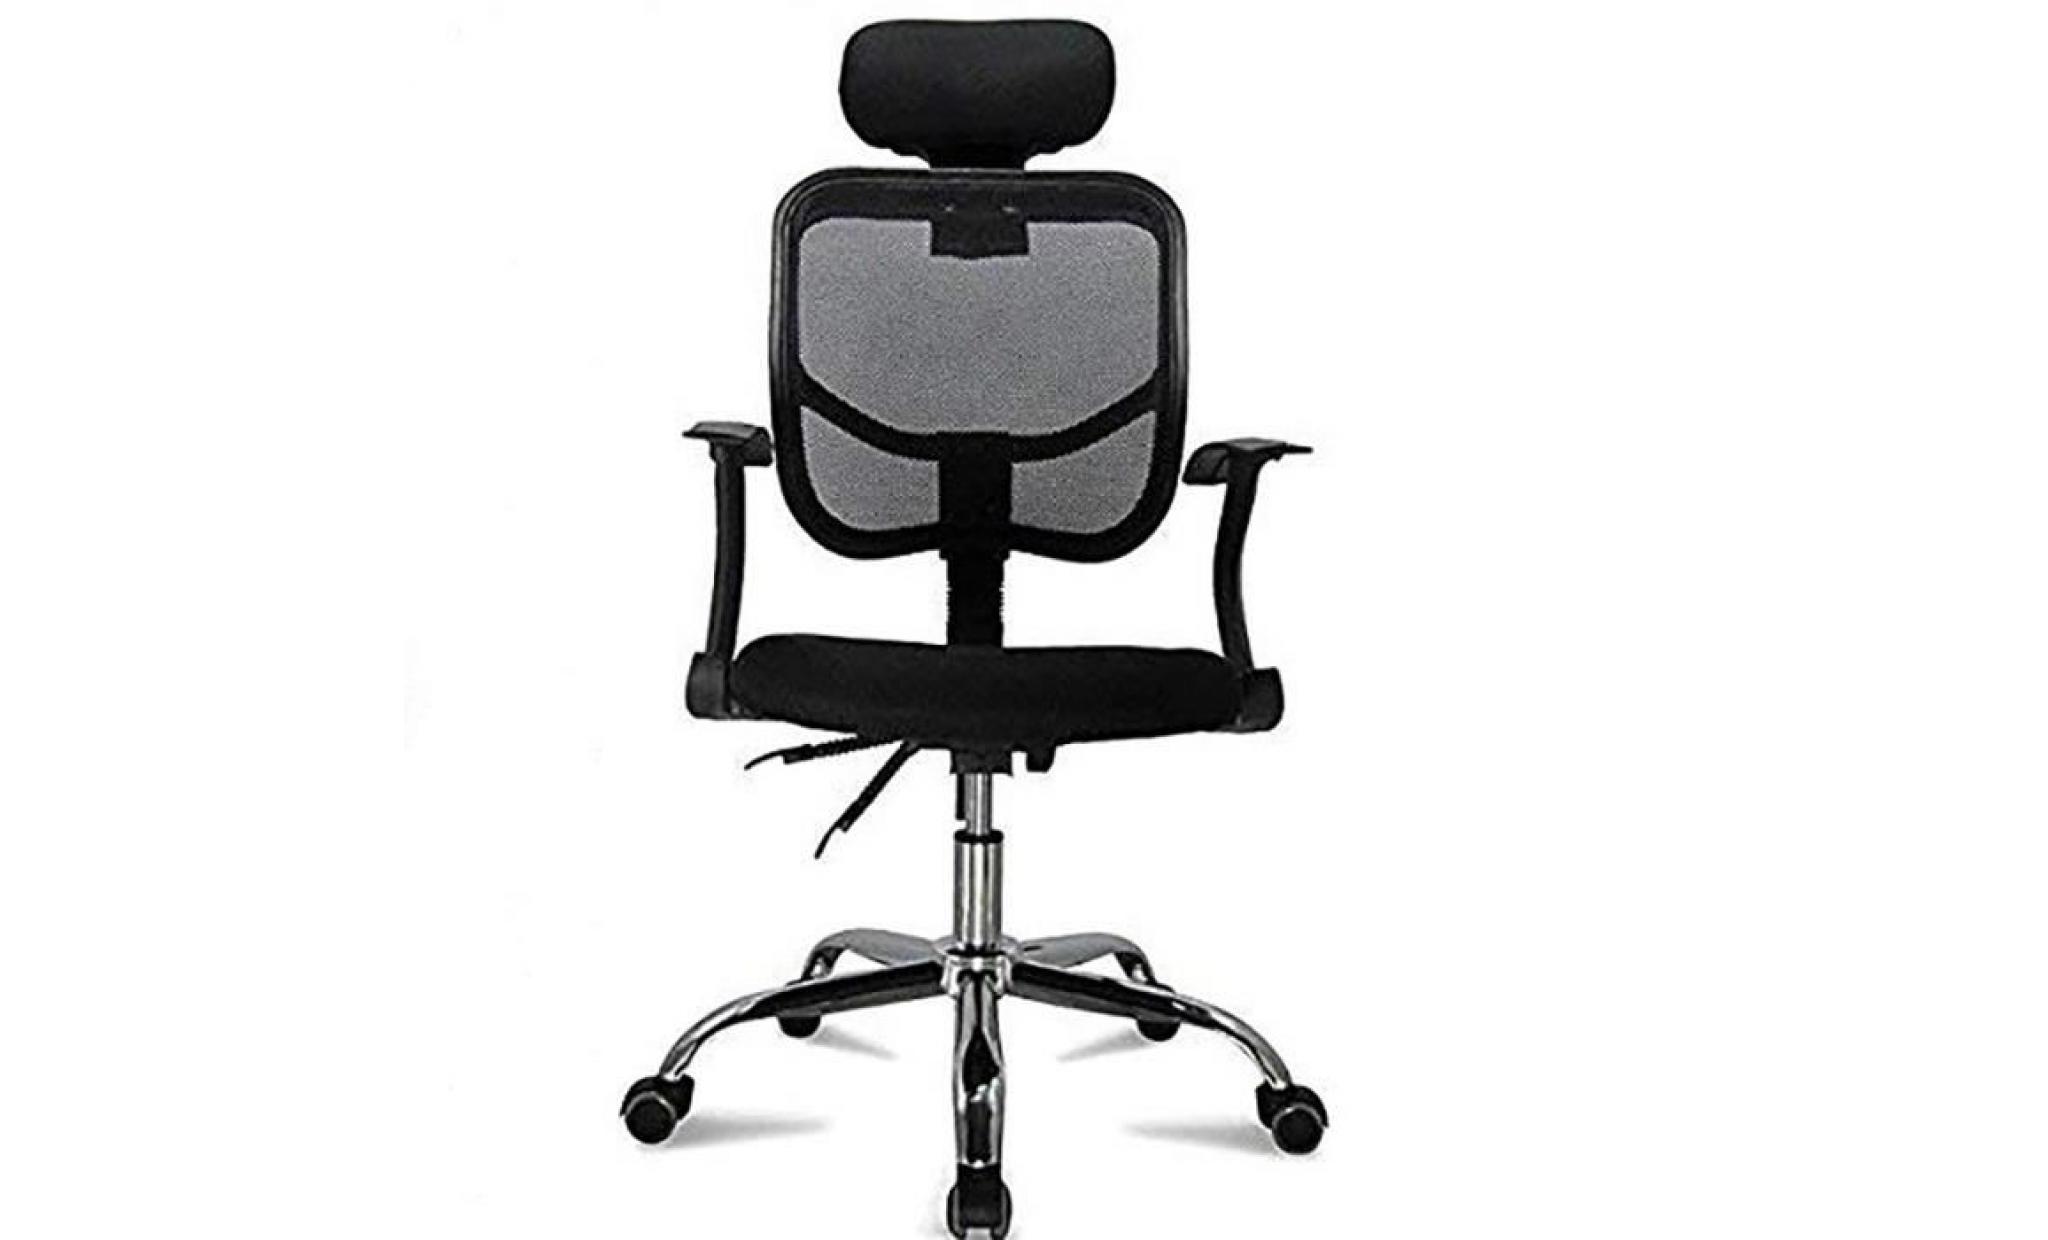 fauteuil de bureau chaise de bureau chaise bureau siege bureau fauteuil ordinateur livraison de france+manette poignée pour ps4